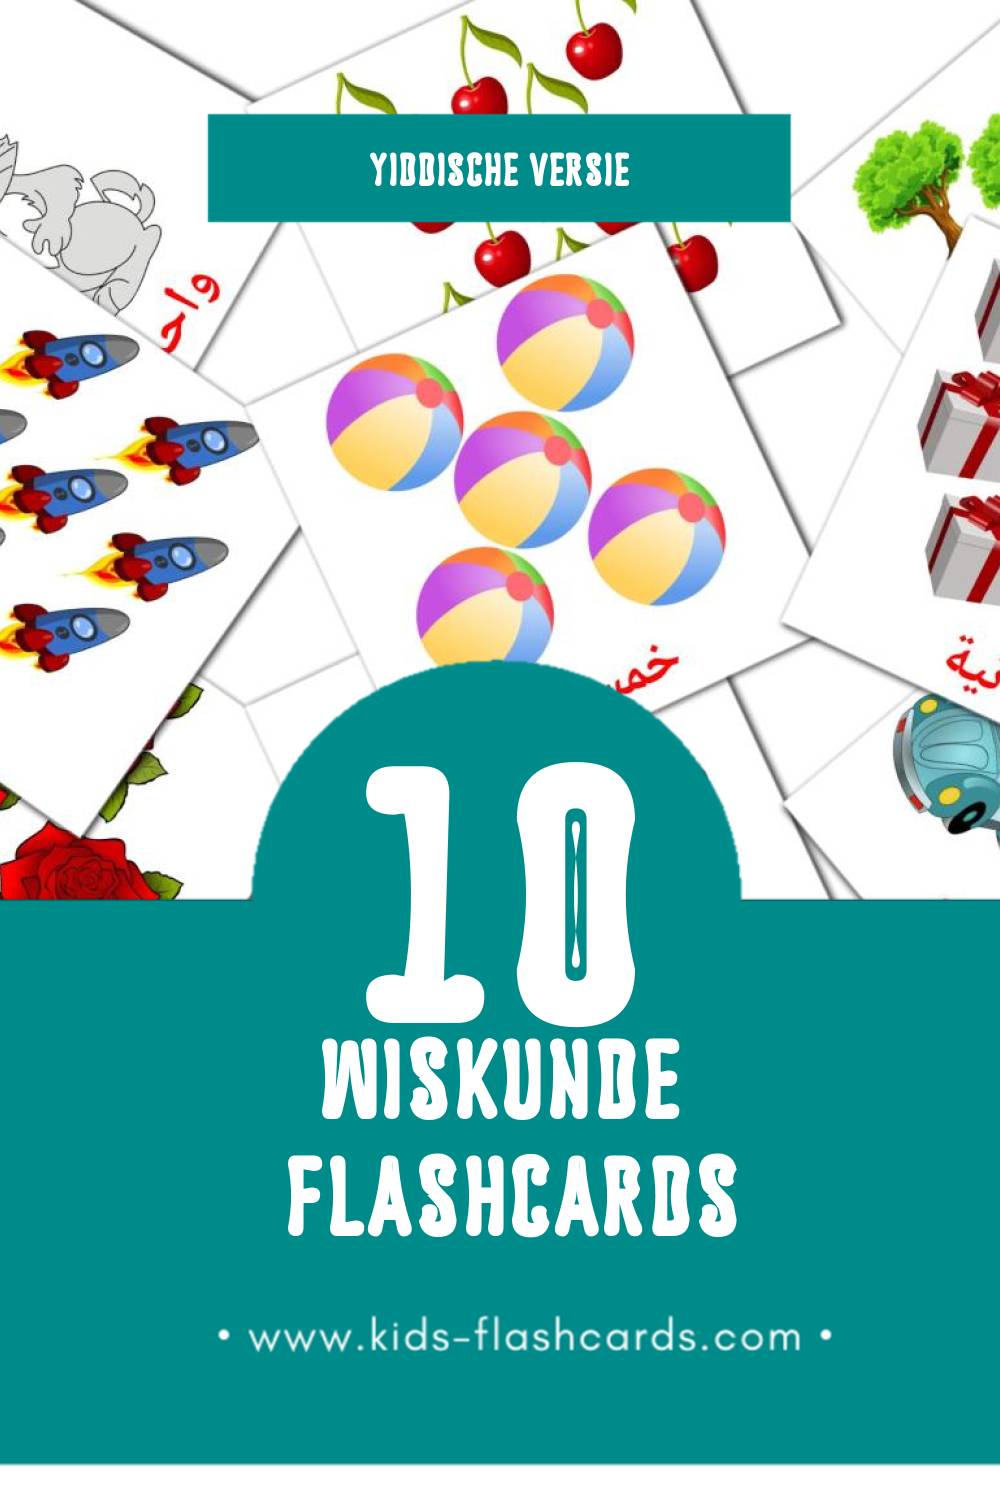 Visuele رياضيات  Flashcards voor Kleuters (10 kaarten in het Yiddisch)